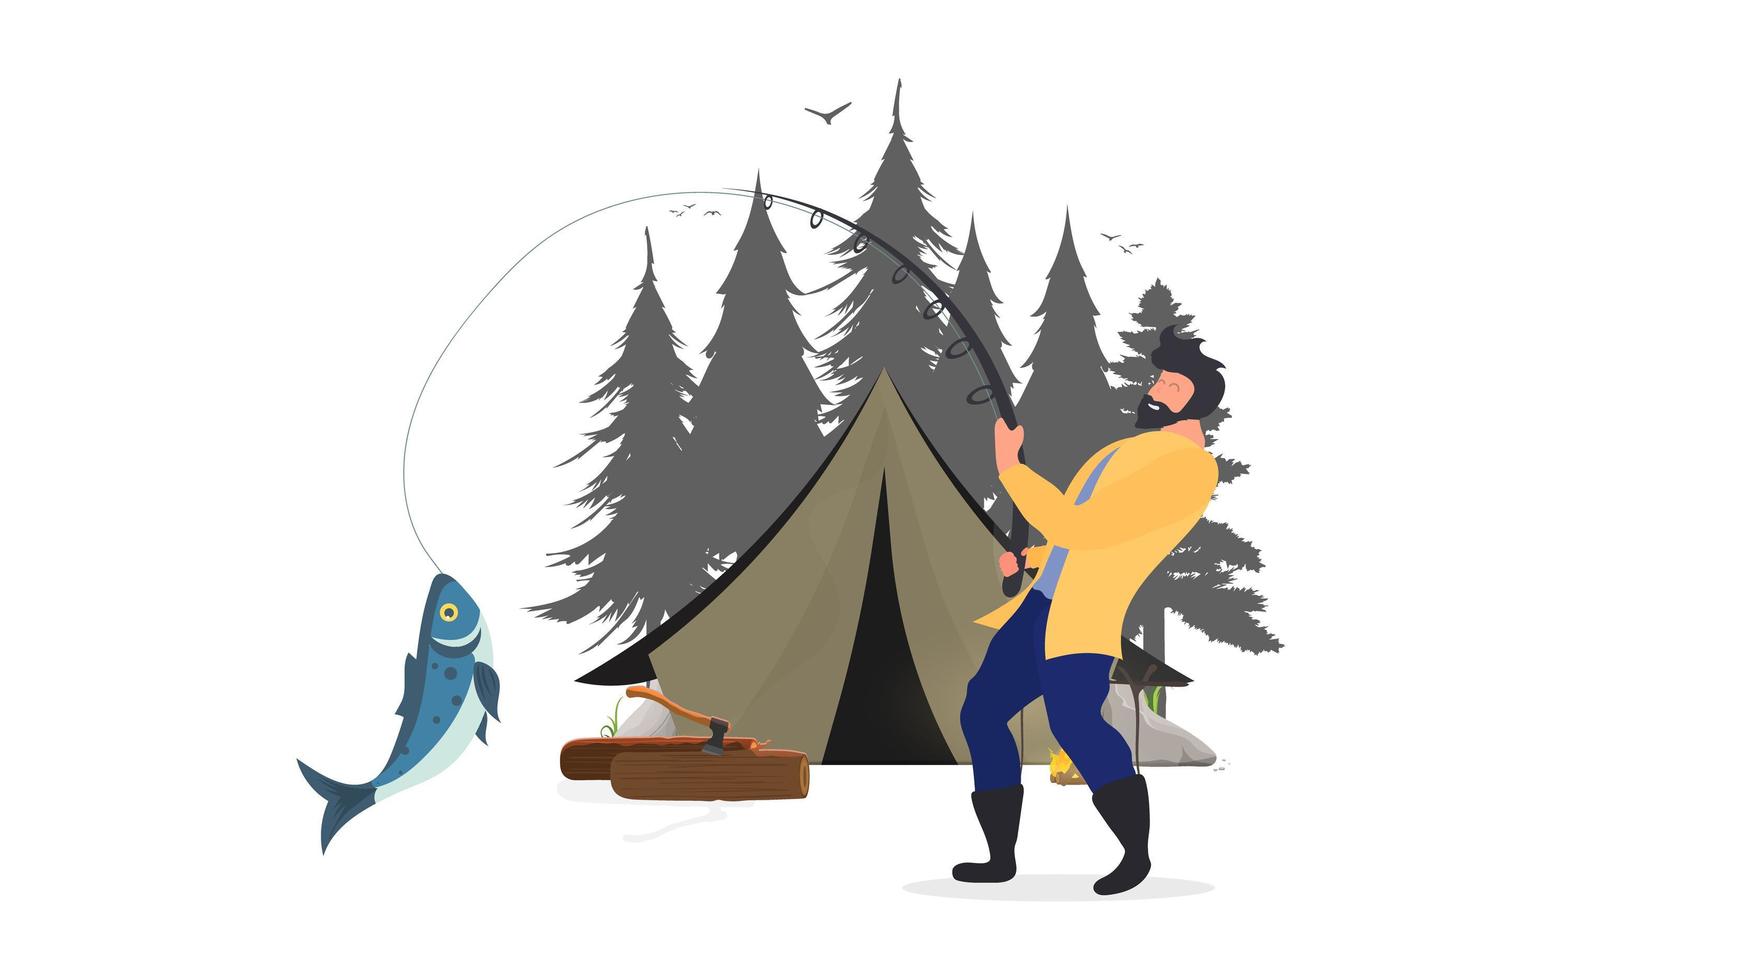 le pêcheur a attrapé le poisson. concept de vacances avec tente et pêche. tente, forêts de silos, feu de joie, bûches, un homme avec un misérable. isolé. vecteur